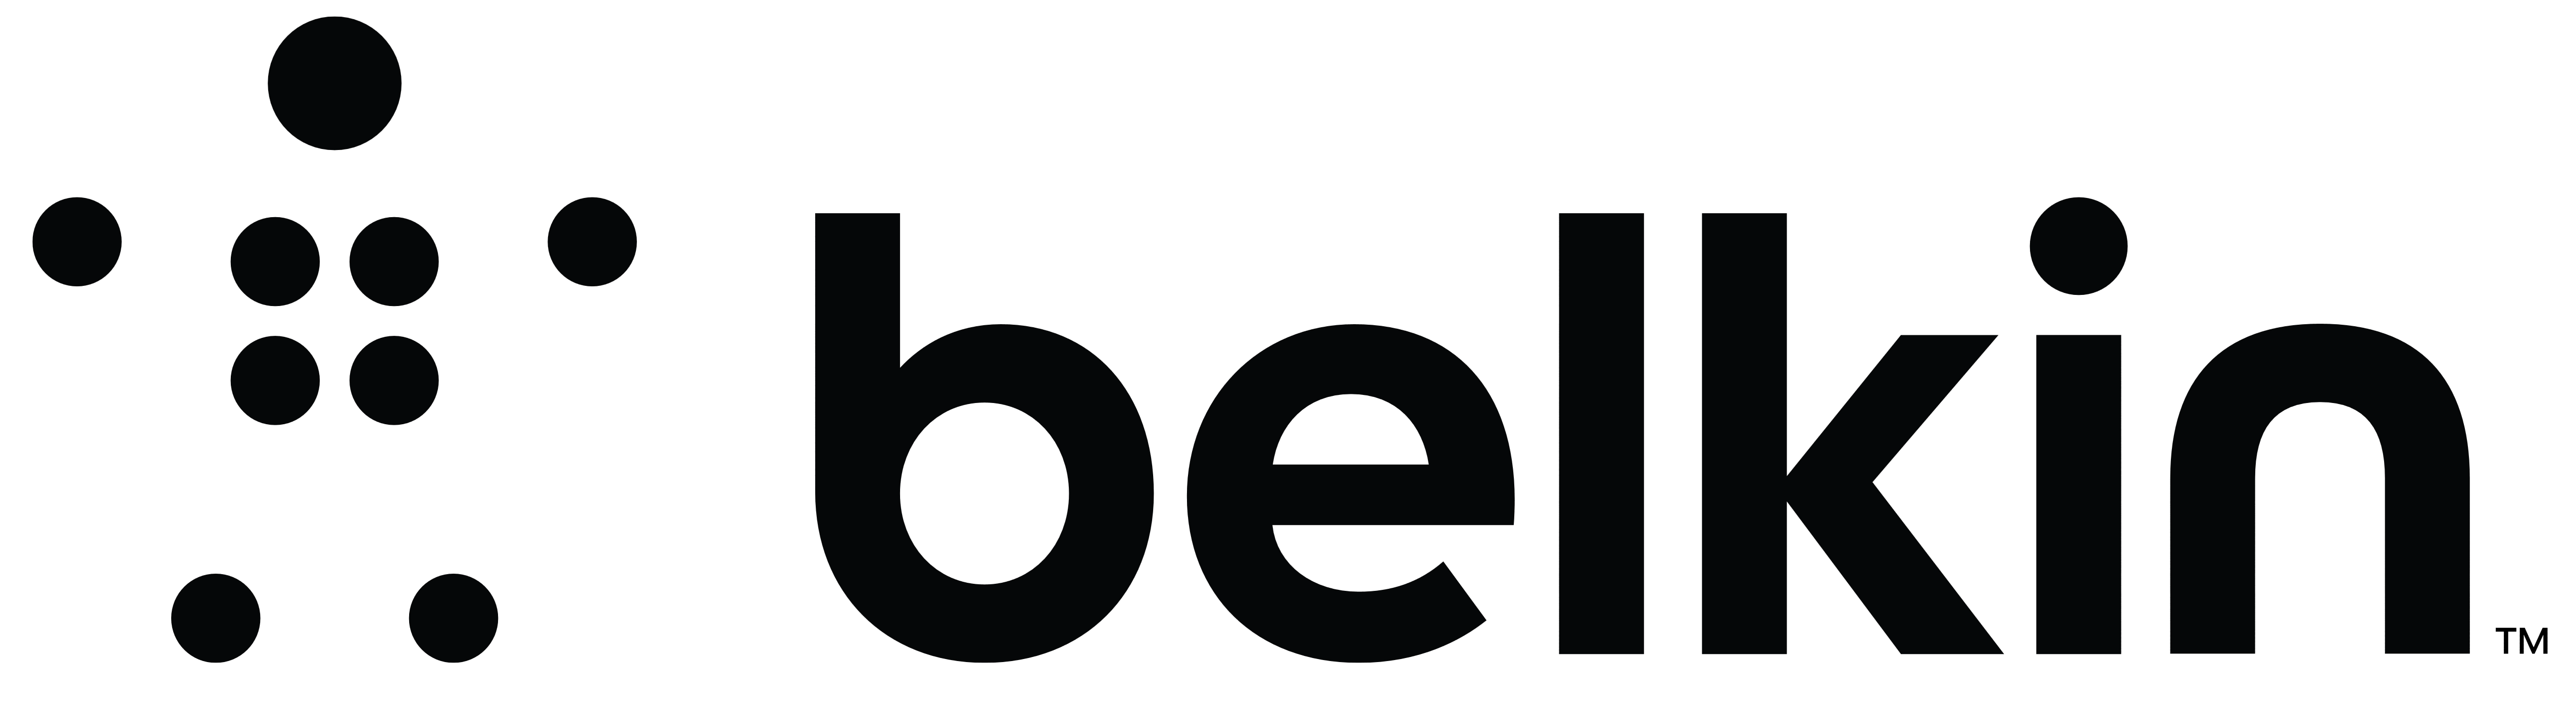 Belkin_logo_logotype